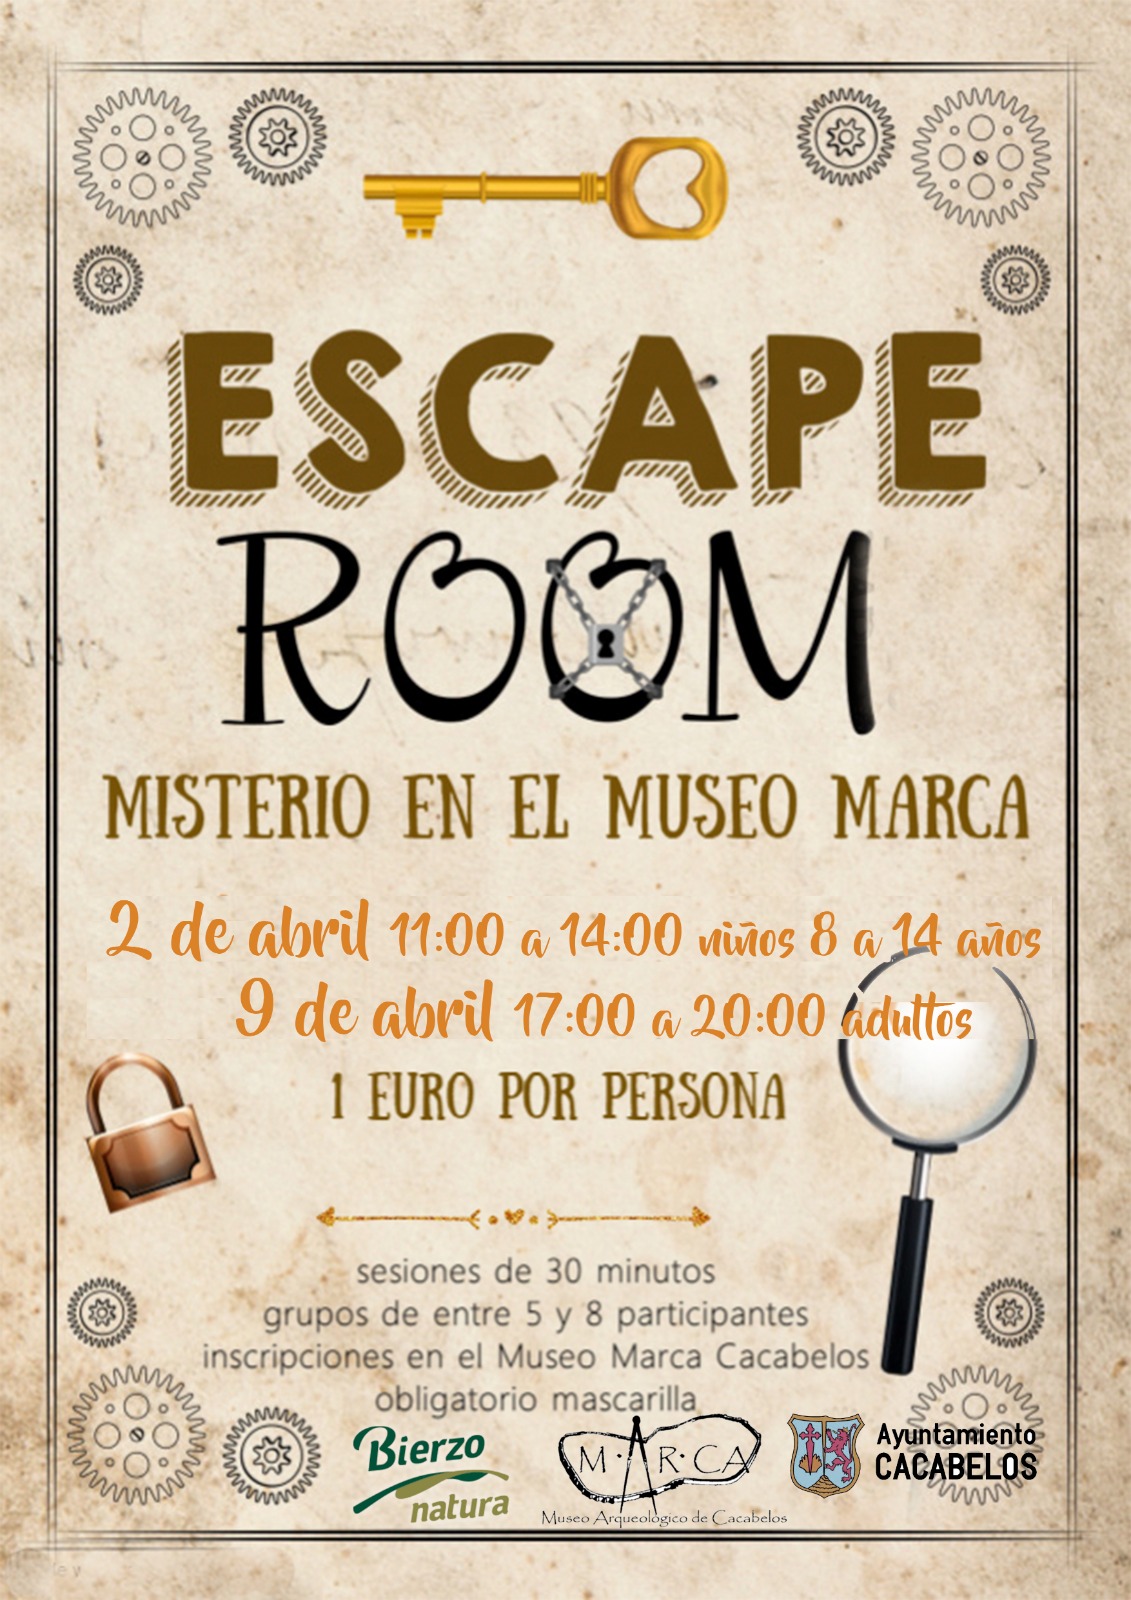 El Museo Arqueológico de Cacabelos organiza el Scape Room 'Misterio en el Museo Marca 2